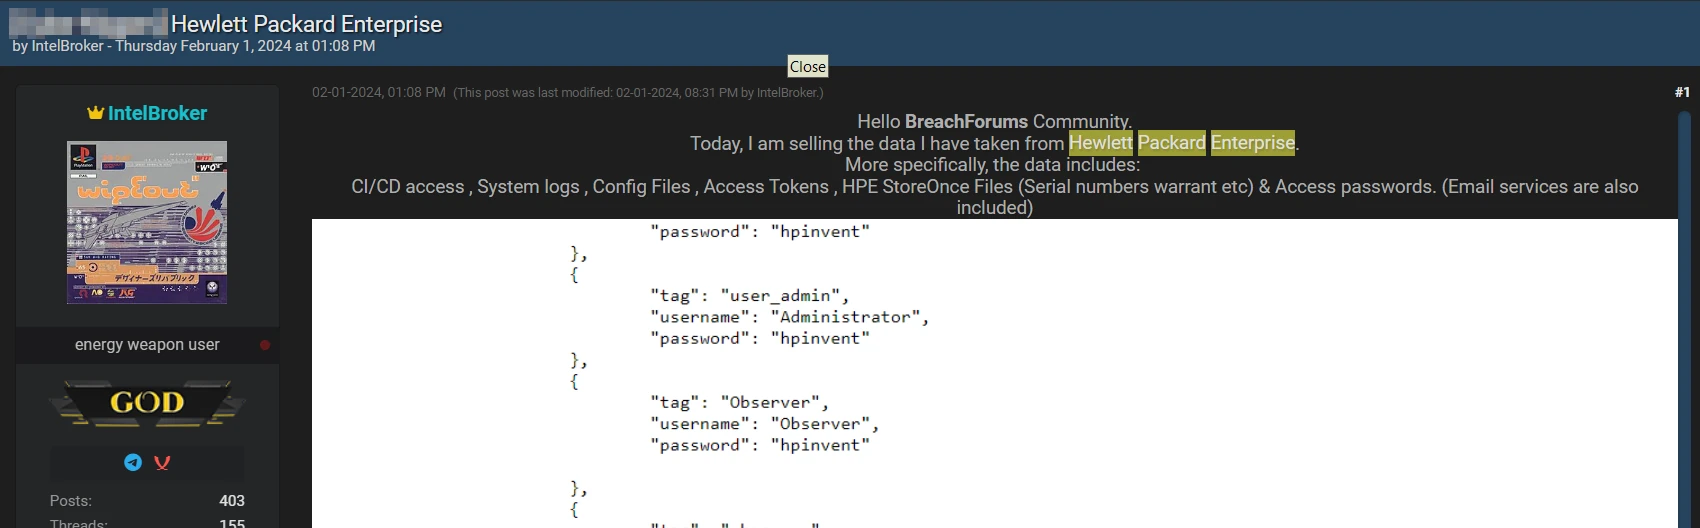 BreachForums publica el hackeo de Hewlett Packard